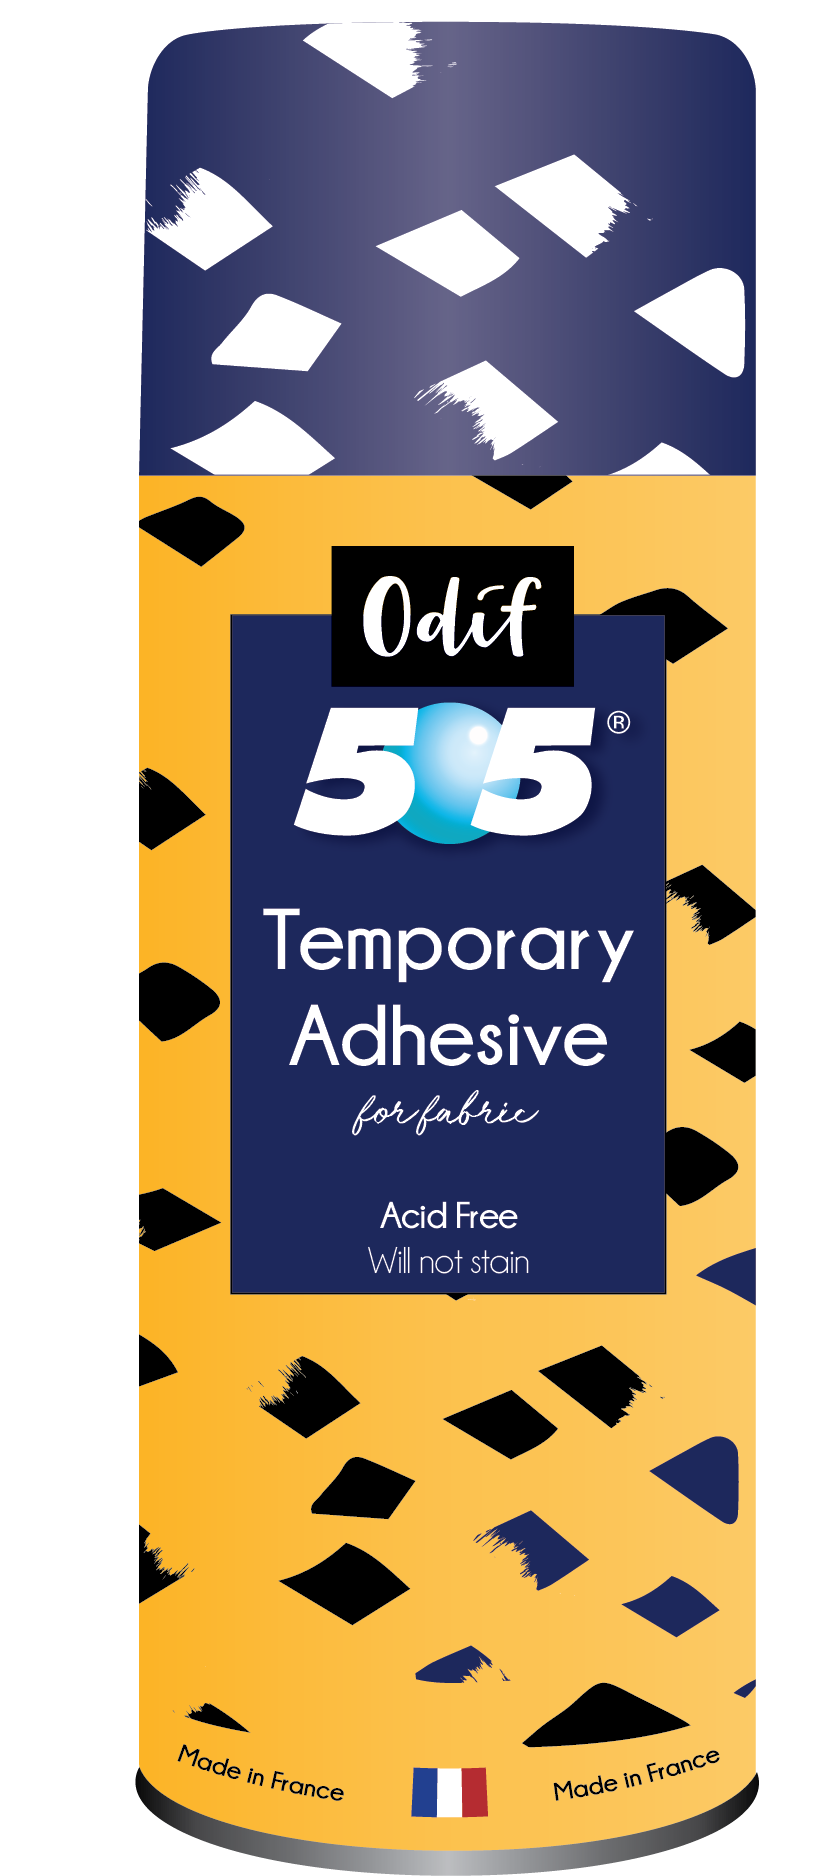 Odif's 505 Temporary Adhesive Spray